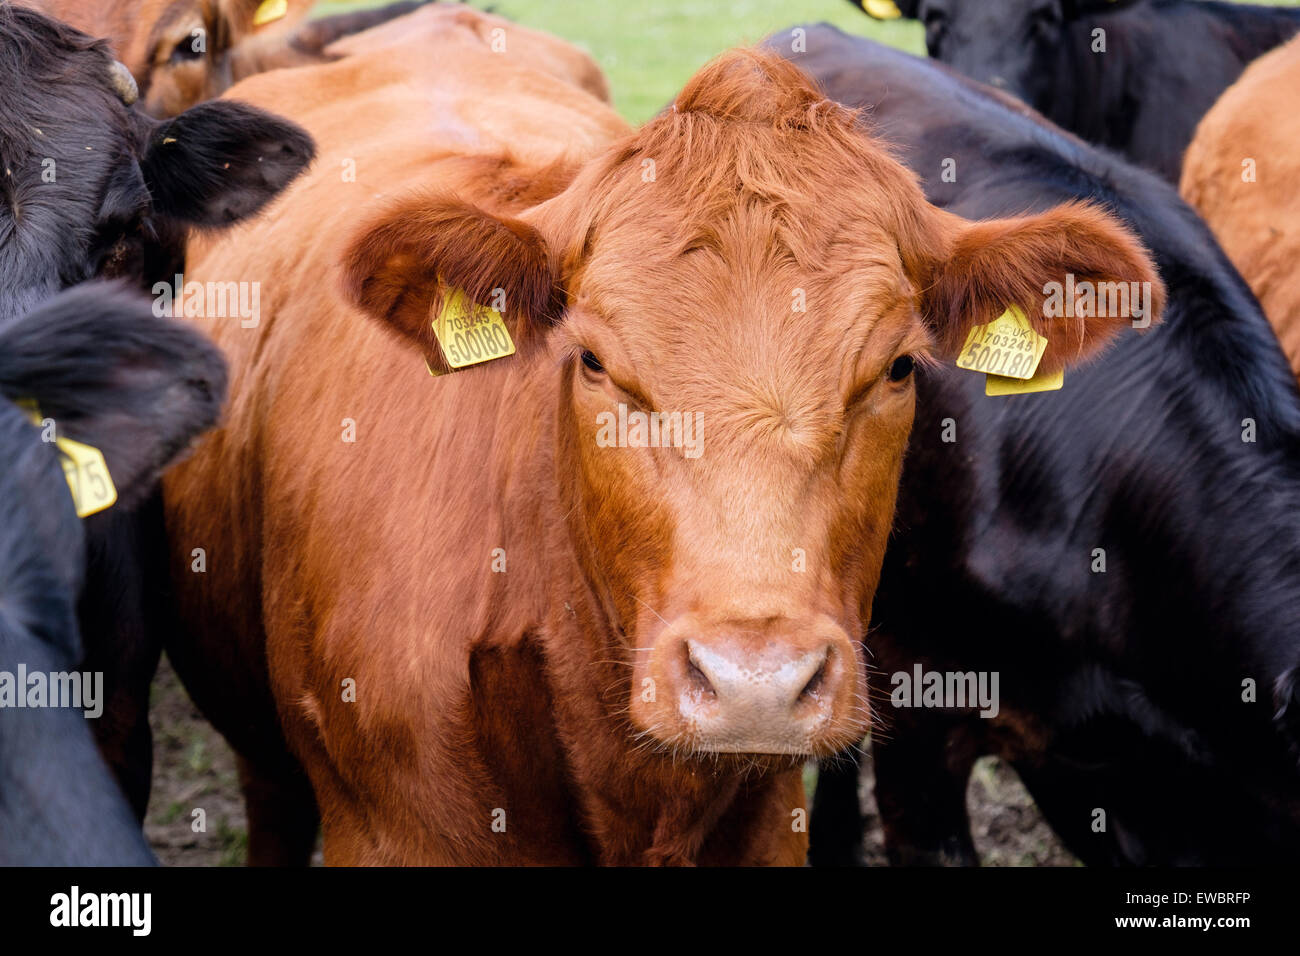 Neugierige junge Stiere Bos Taurus (Rinder) mit gelben Ohrmarken in einem Bauernhof-Feld. Wales, UK, Großbritannien Stockfoto